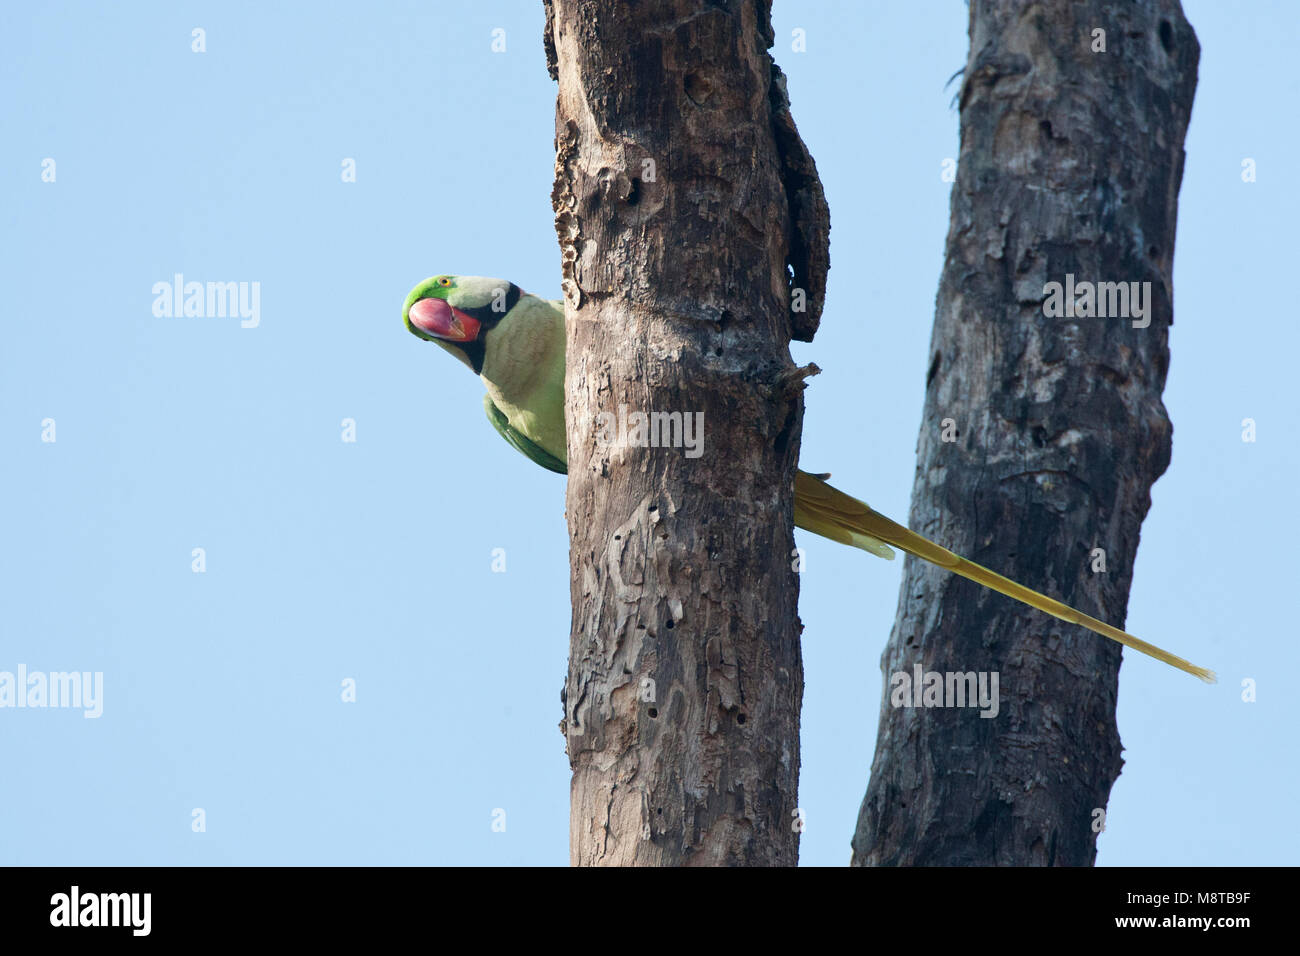 Alexanderparkiet zittend in een boom; Alexandrine Parakeet (Psittacula eupartia) arroccato in una struttura ad albero Foto Stock